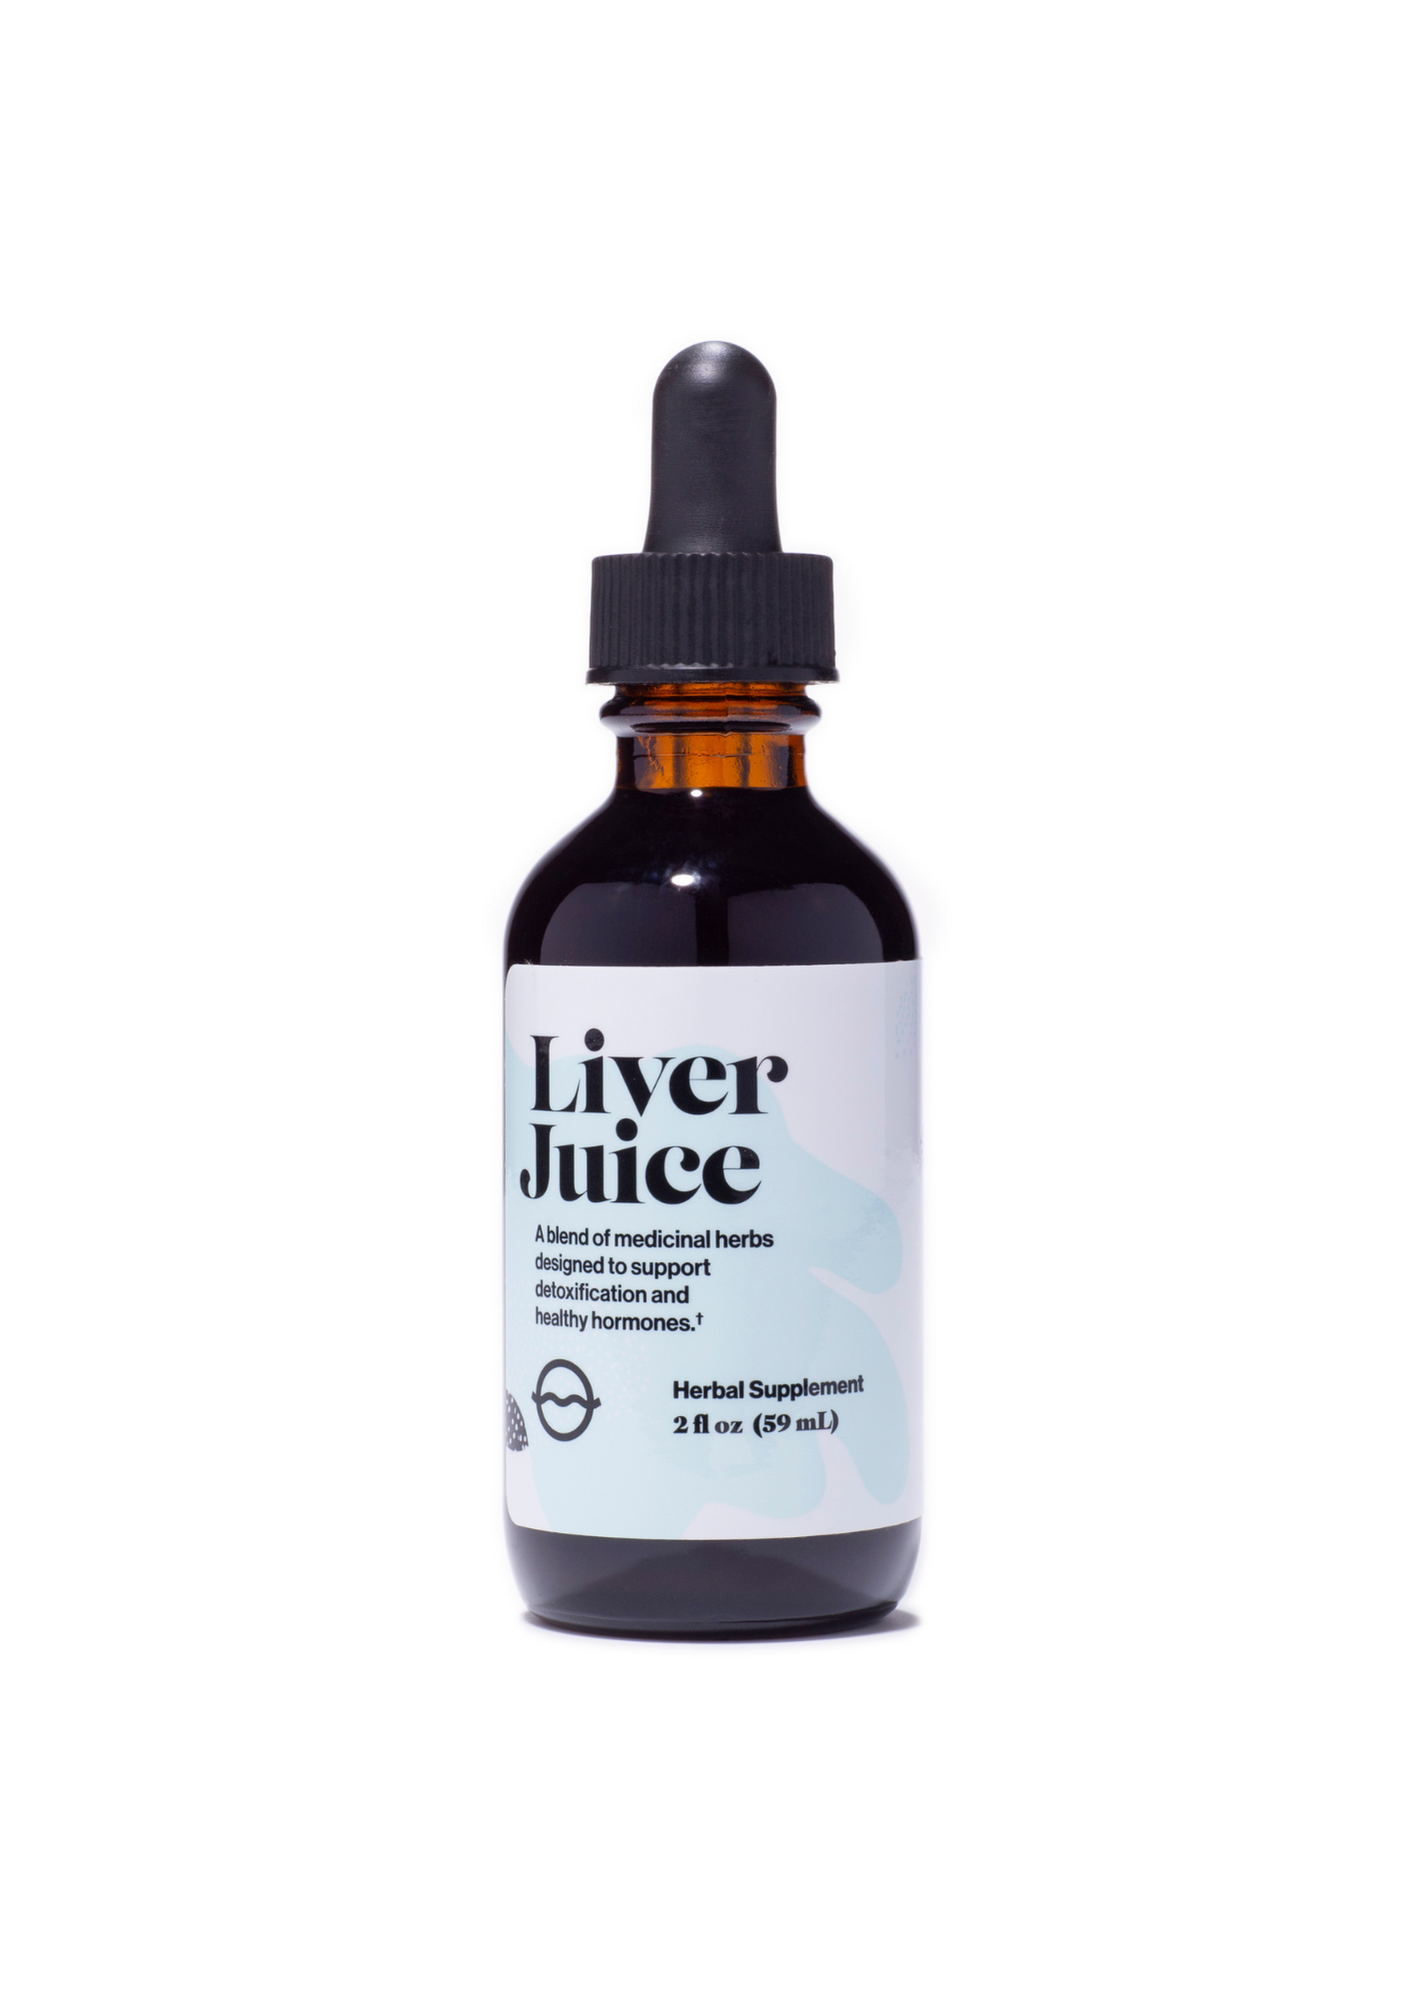 Herbal Supplement - Liver Juice